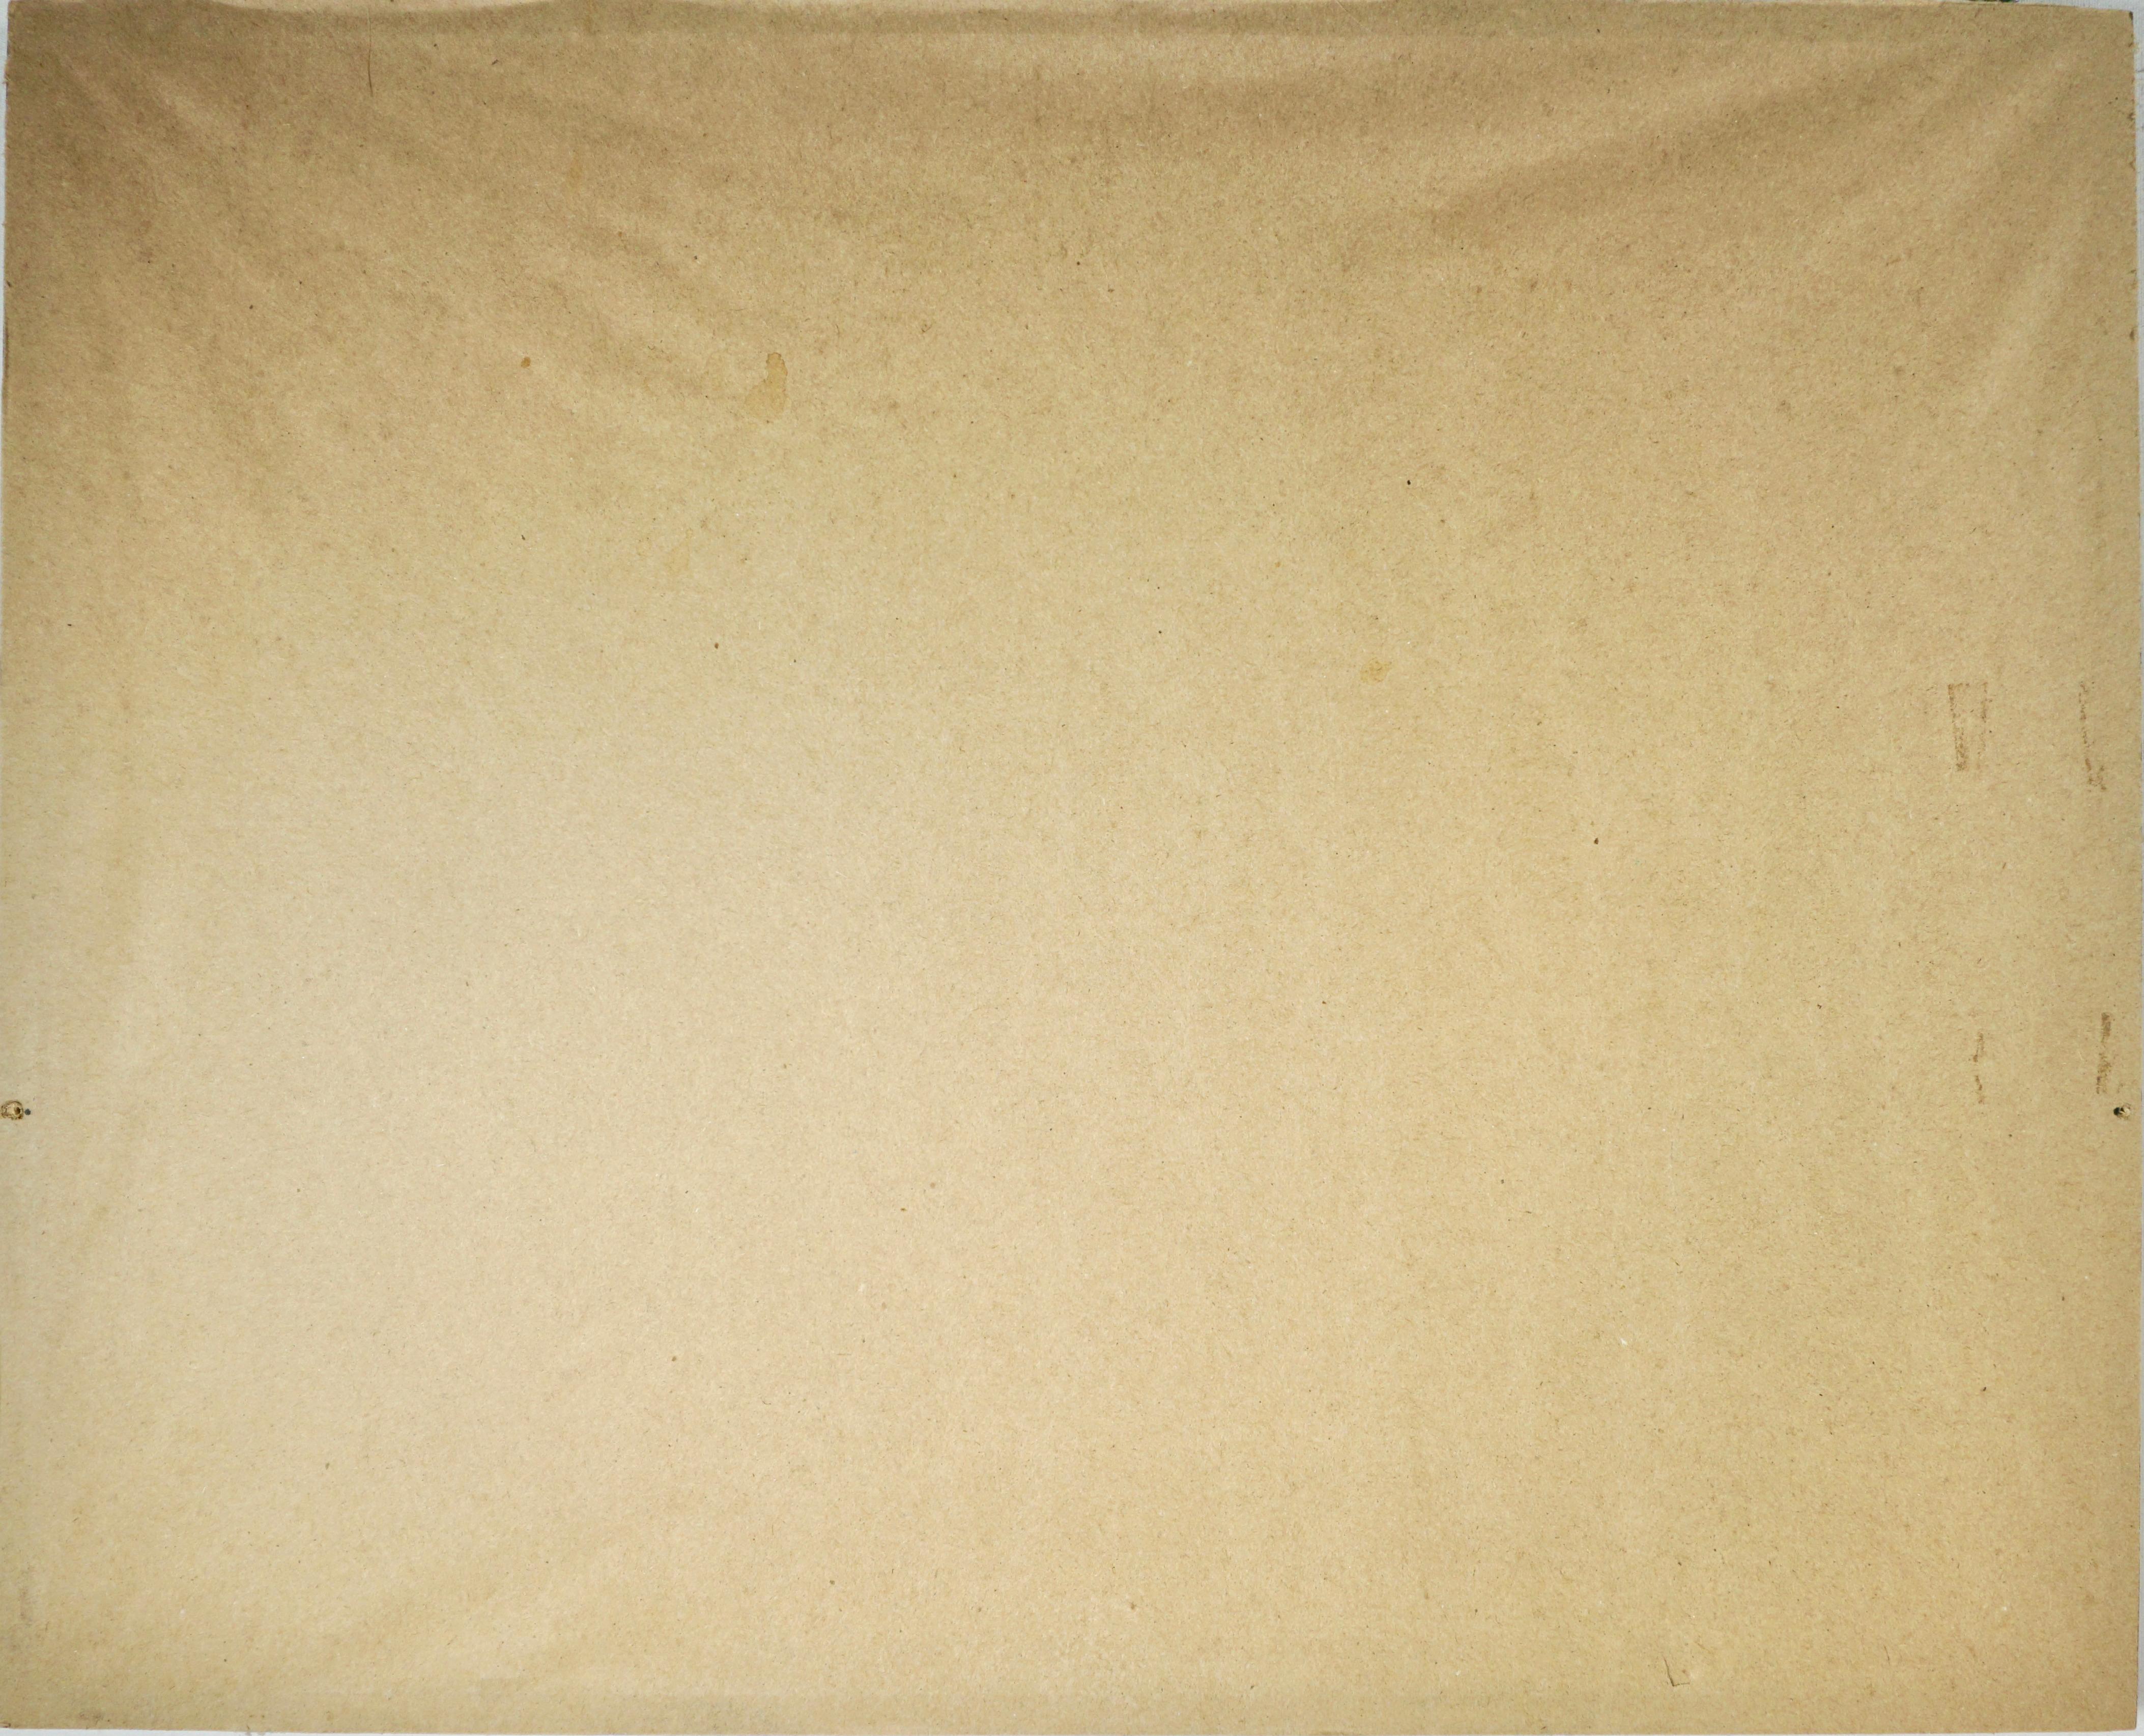 Romain De Tirtoff (Erté) (russe/français 1892-1990.  Crayon Signé en bas à droite, numéroté 226/300 en bas à gauche. Bord inférieur décoré.  American Atelier, New York avec des timbres en relief en bas à gauche. Une femme vêtue de trois